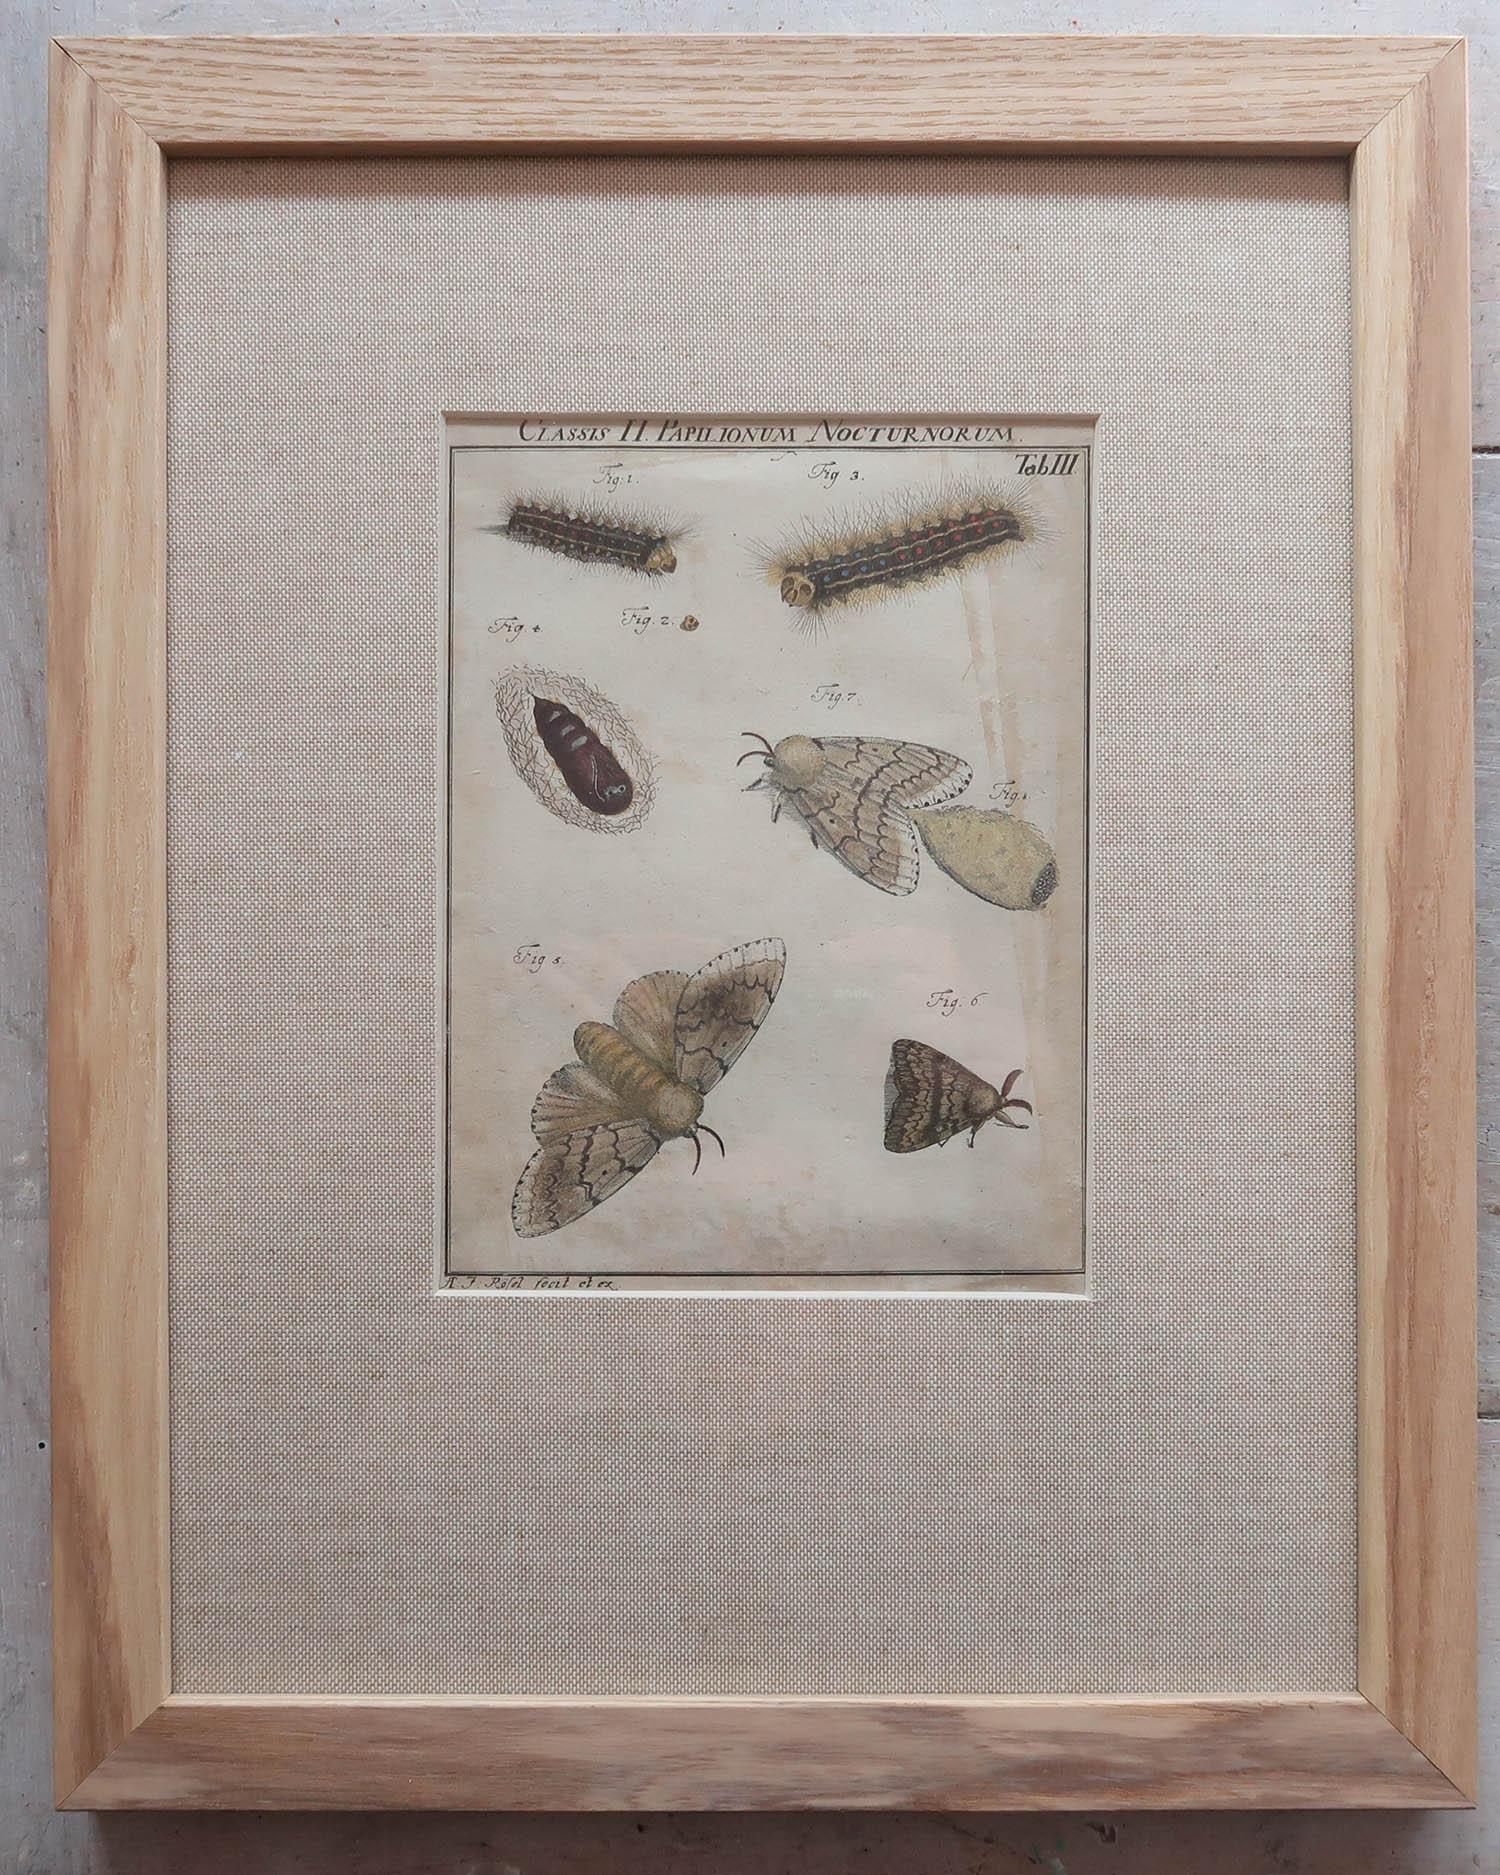 Other Set of 6 Original Antique Butterfly Prints After A.J Rosel Von Rosenhof, C.1740 For Sale